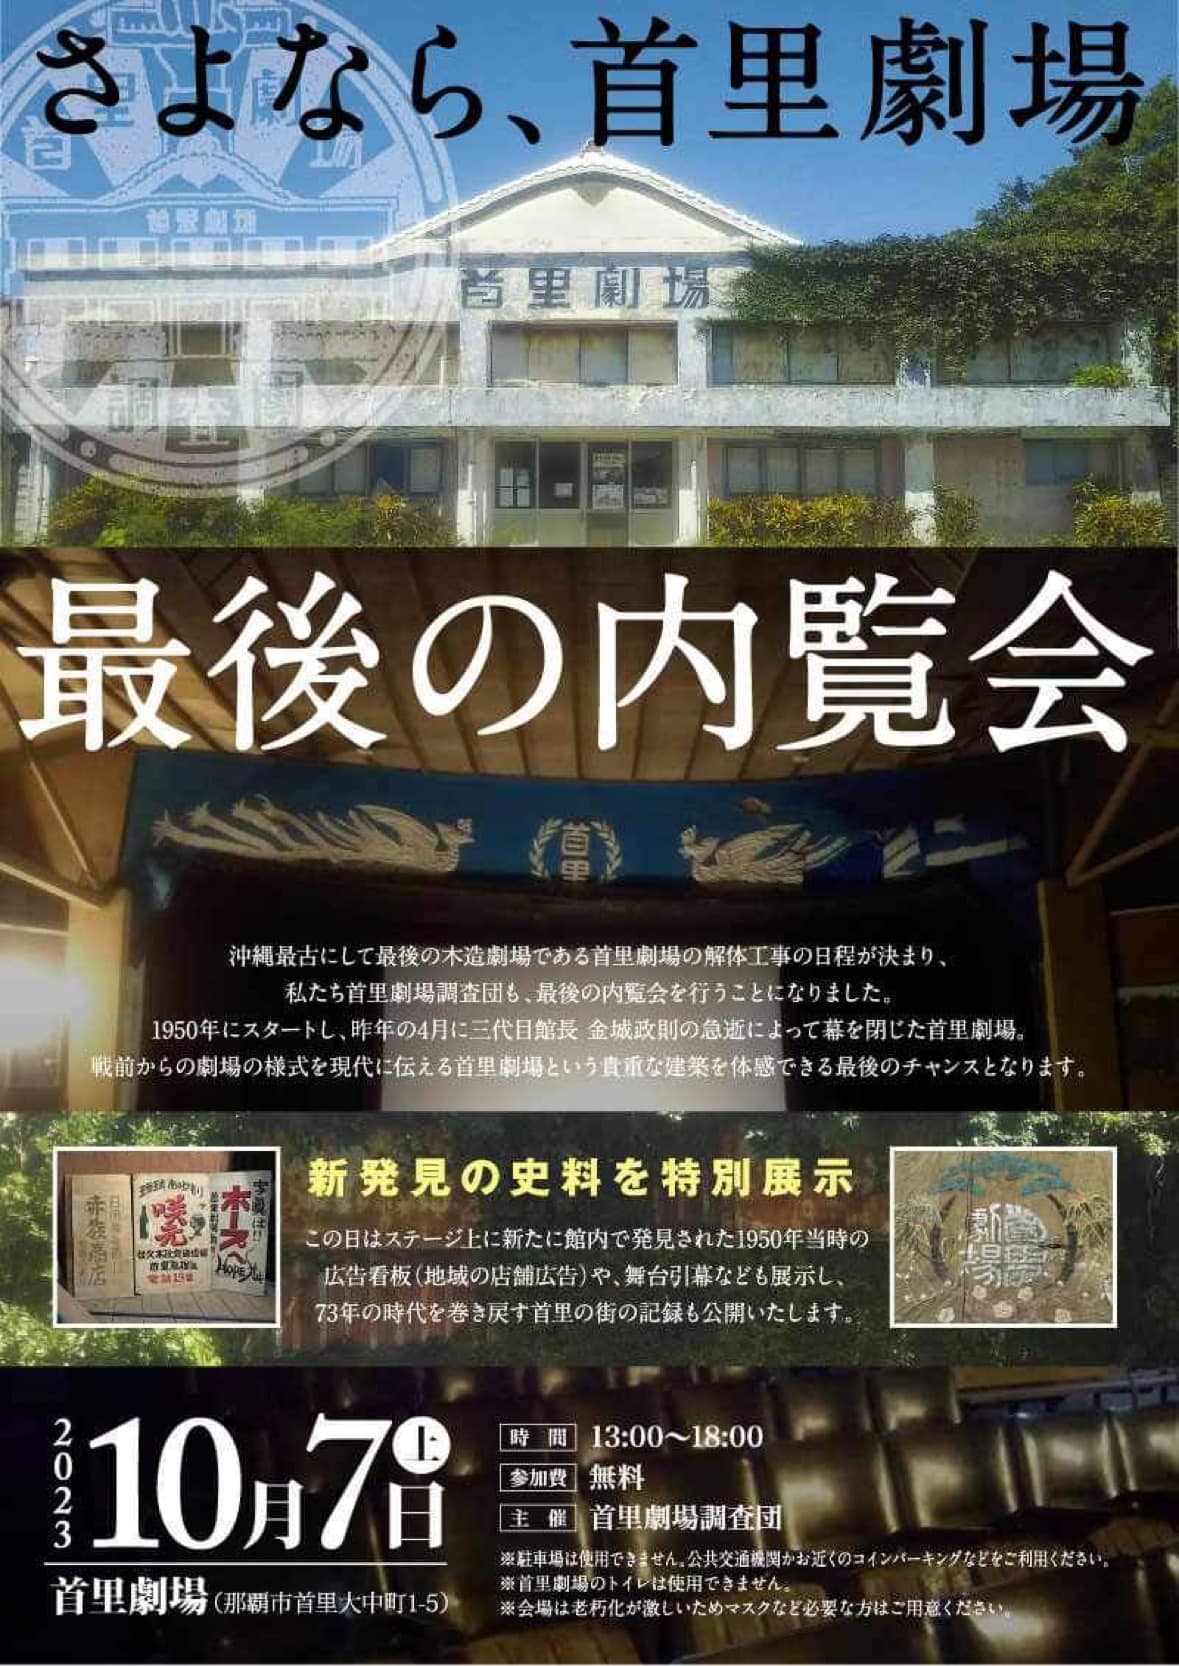 沖縄最古の劇場がついに解体決定「首里劇場 最後の内覧会」